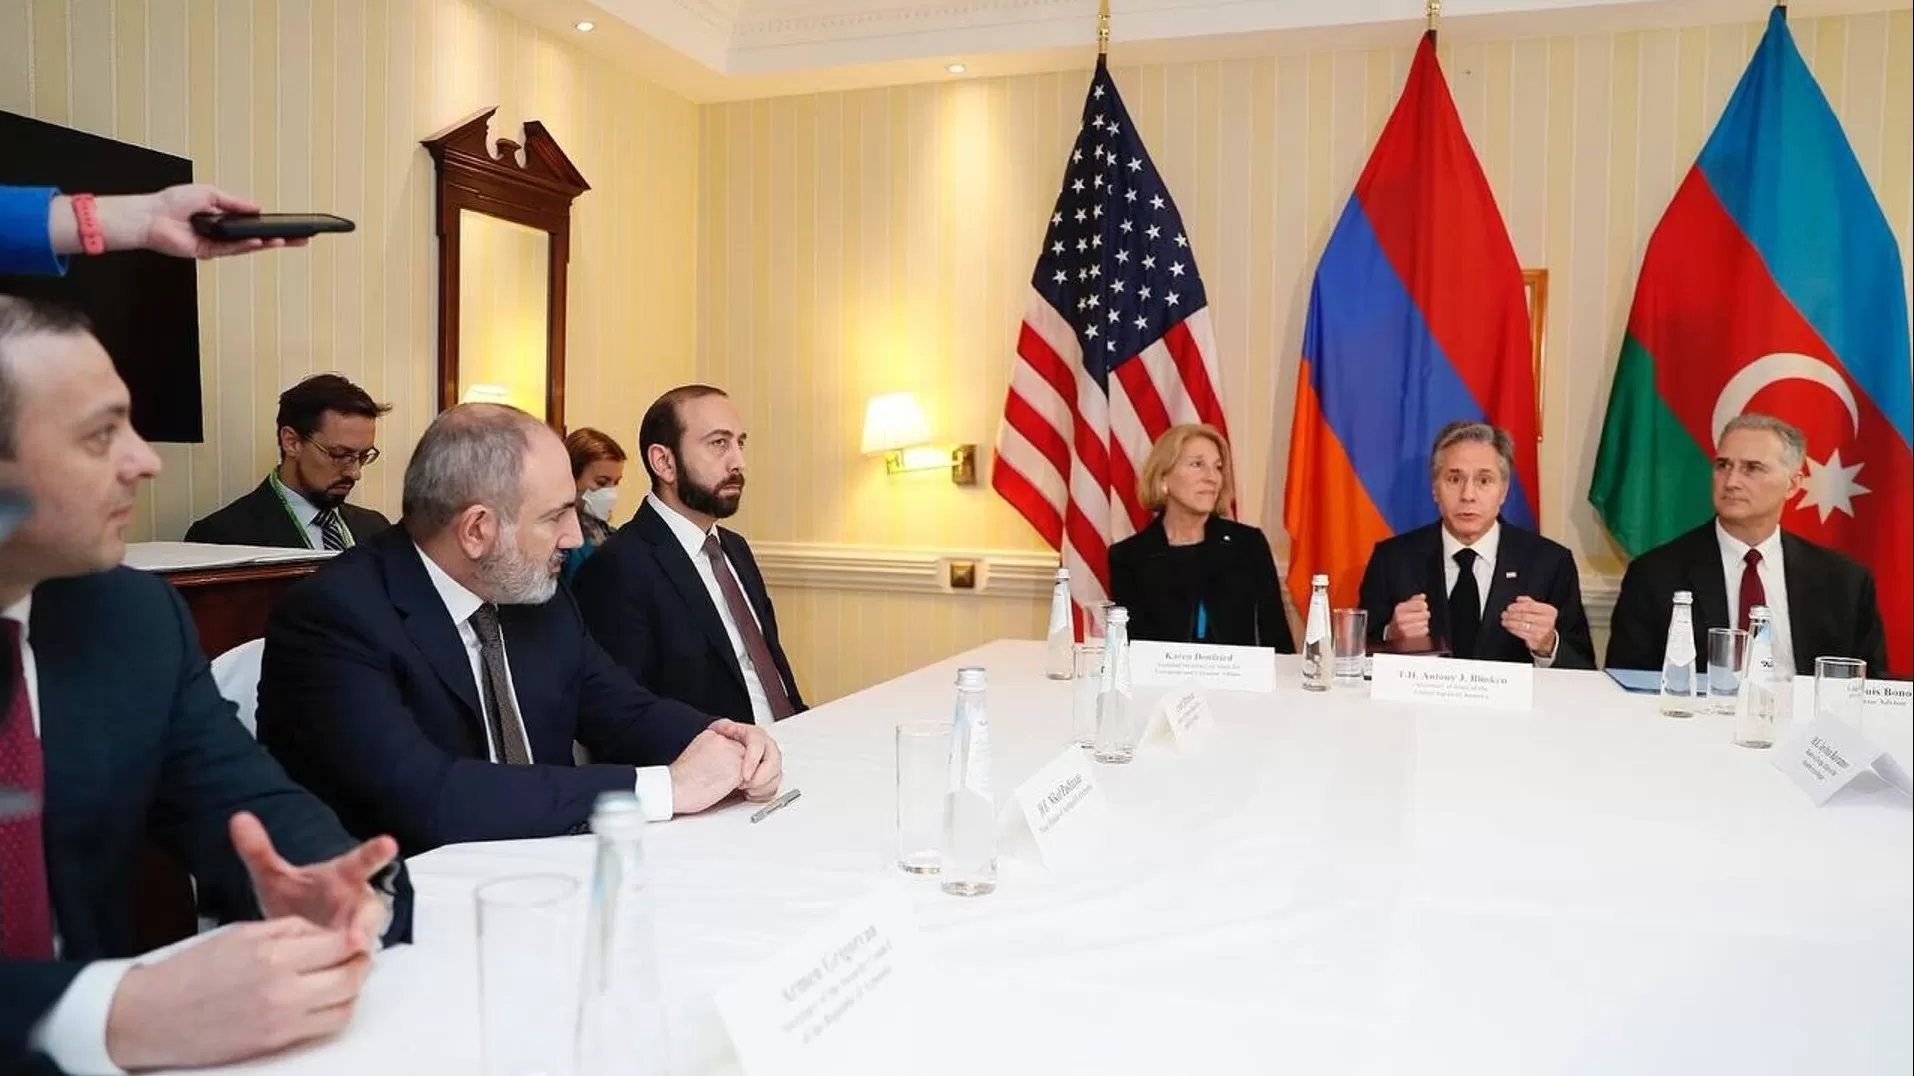 Հայաստանի և Ադրբեջանի միջև բանակցությունները վերջին շրջանում առաջընթաց են արձանագրել, որը ԱՄՆ-ի ներգրավման արդյունք է․ Նեդ Փրայս